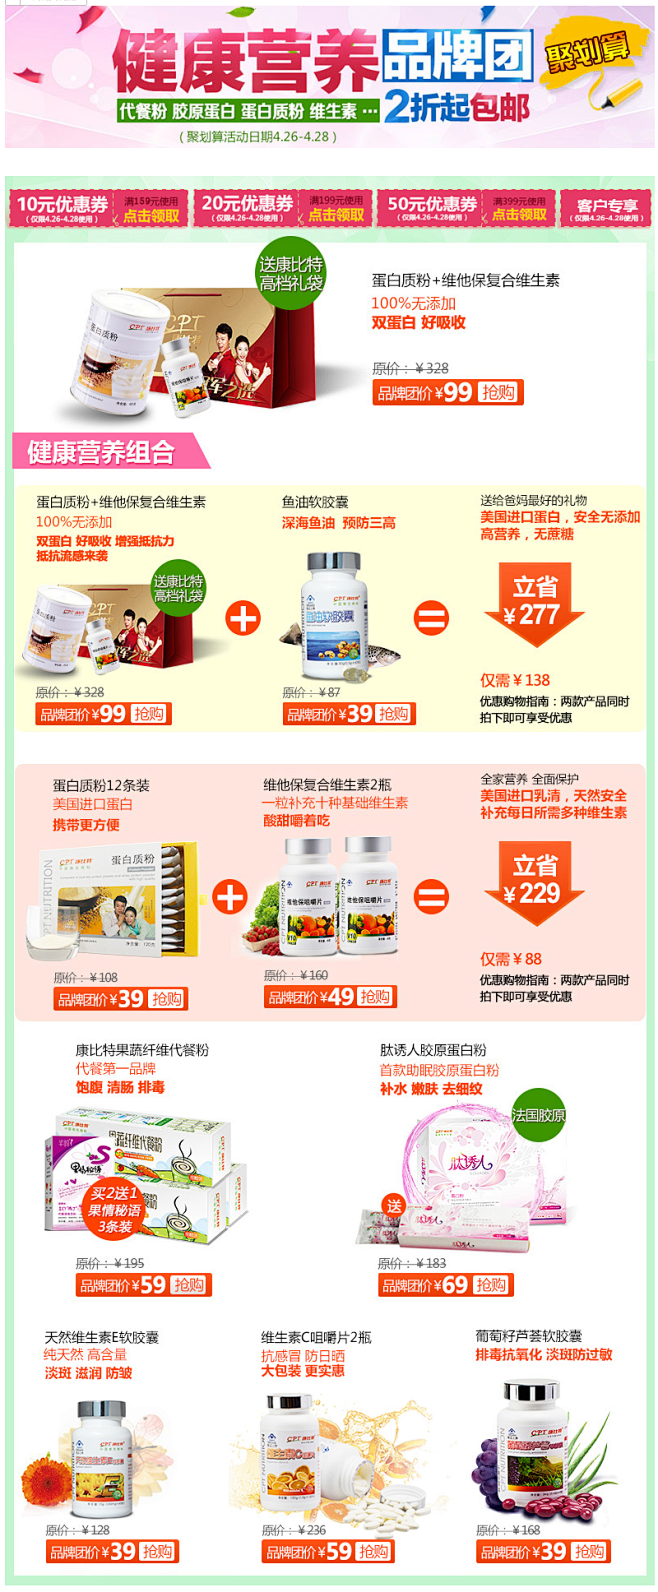 【聚】99元 康比特营养套装 蛋白质+维...